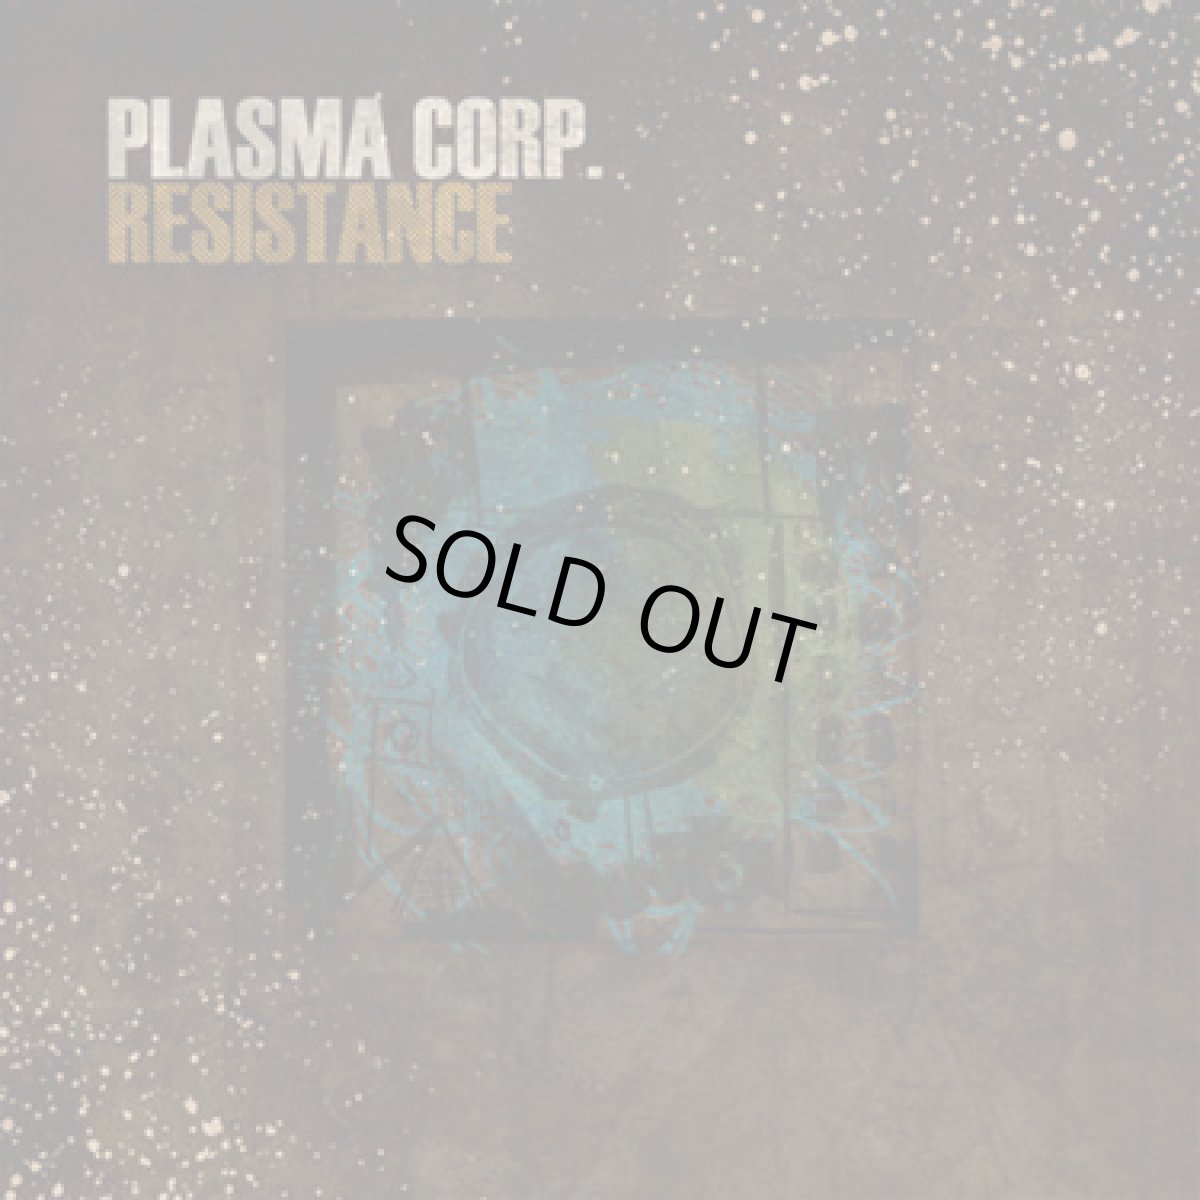 画像1: CD「Plasma Corp / Resistance」【プログレッシヴトランス】 (1)